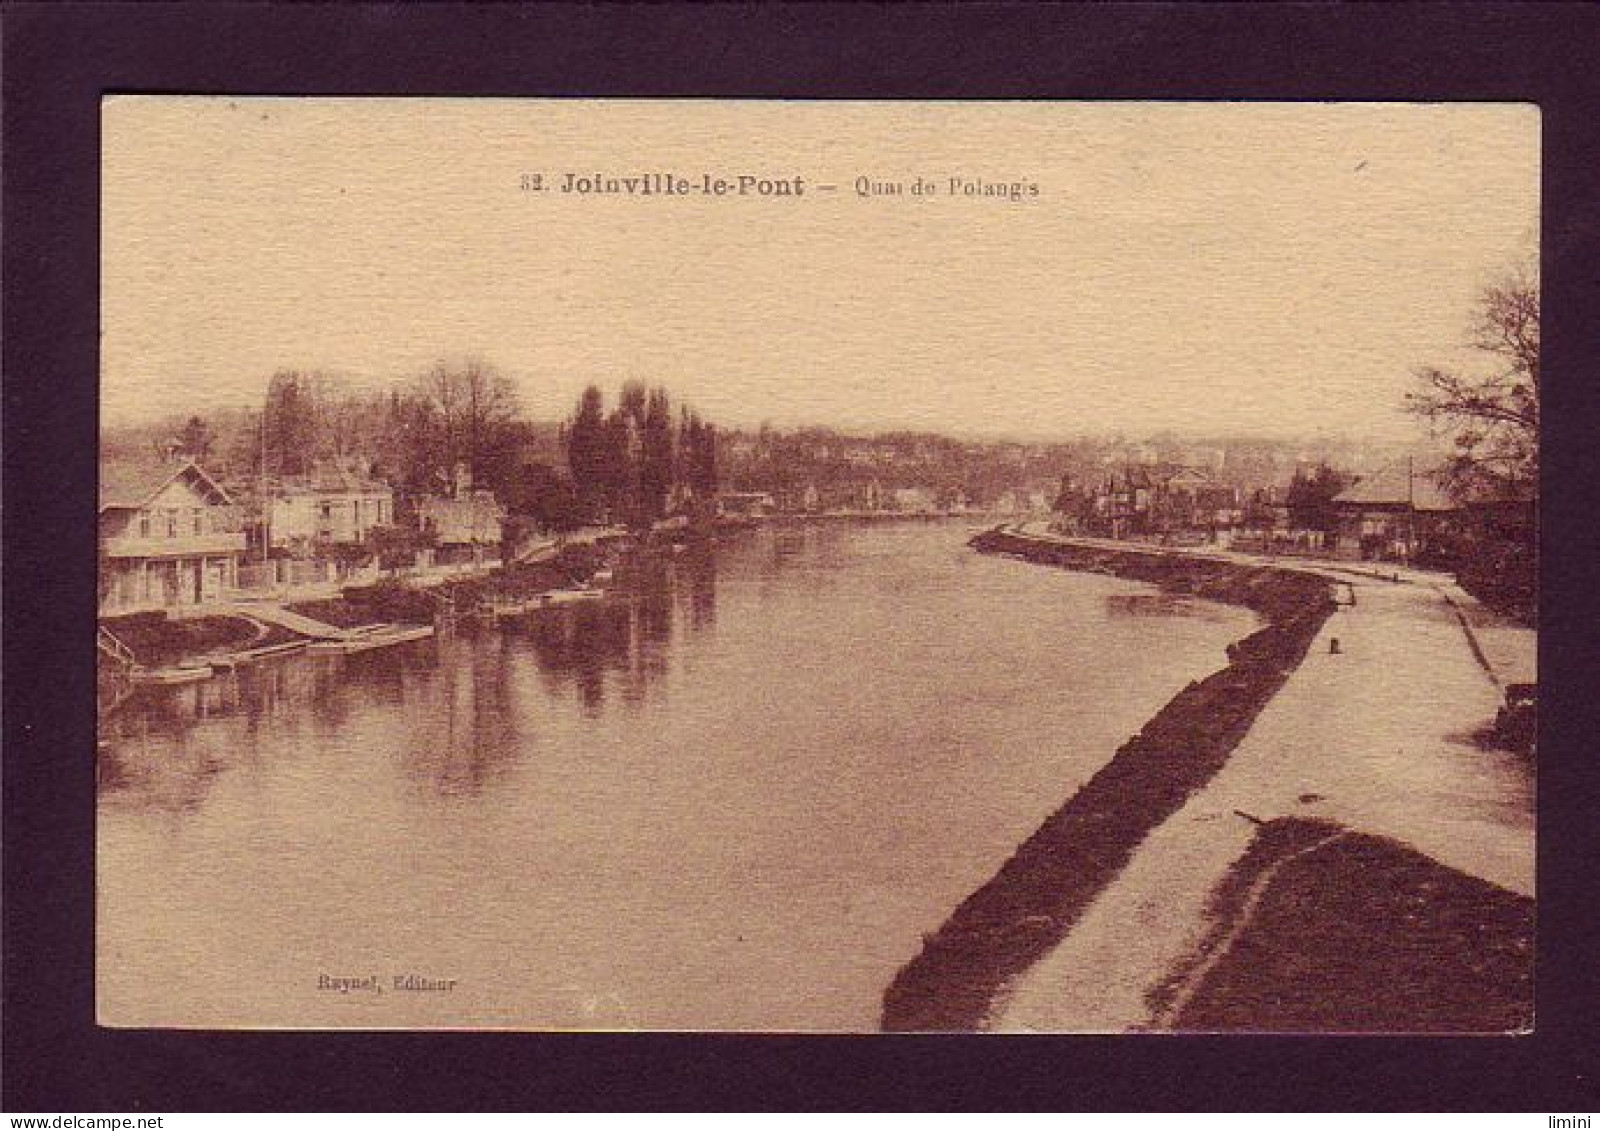 94 - JOINVILLE-le-PONT - QUAI DE POLANGIS  - Joinville Le Pont